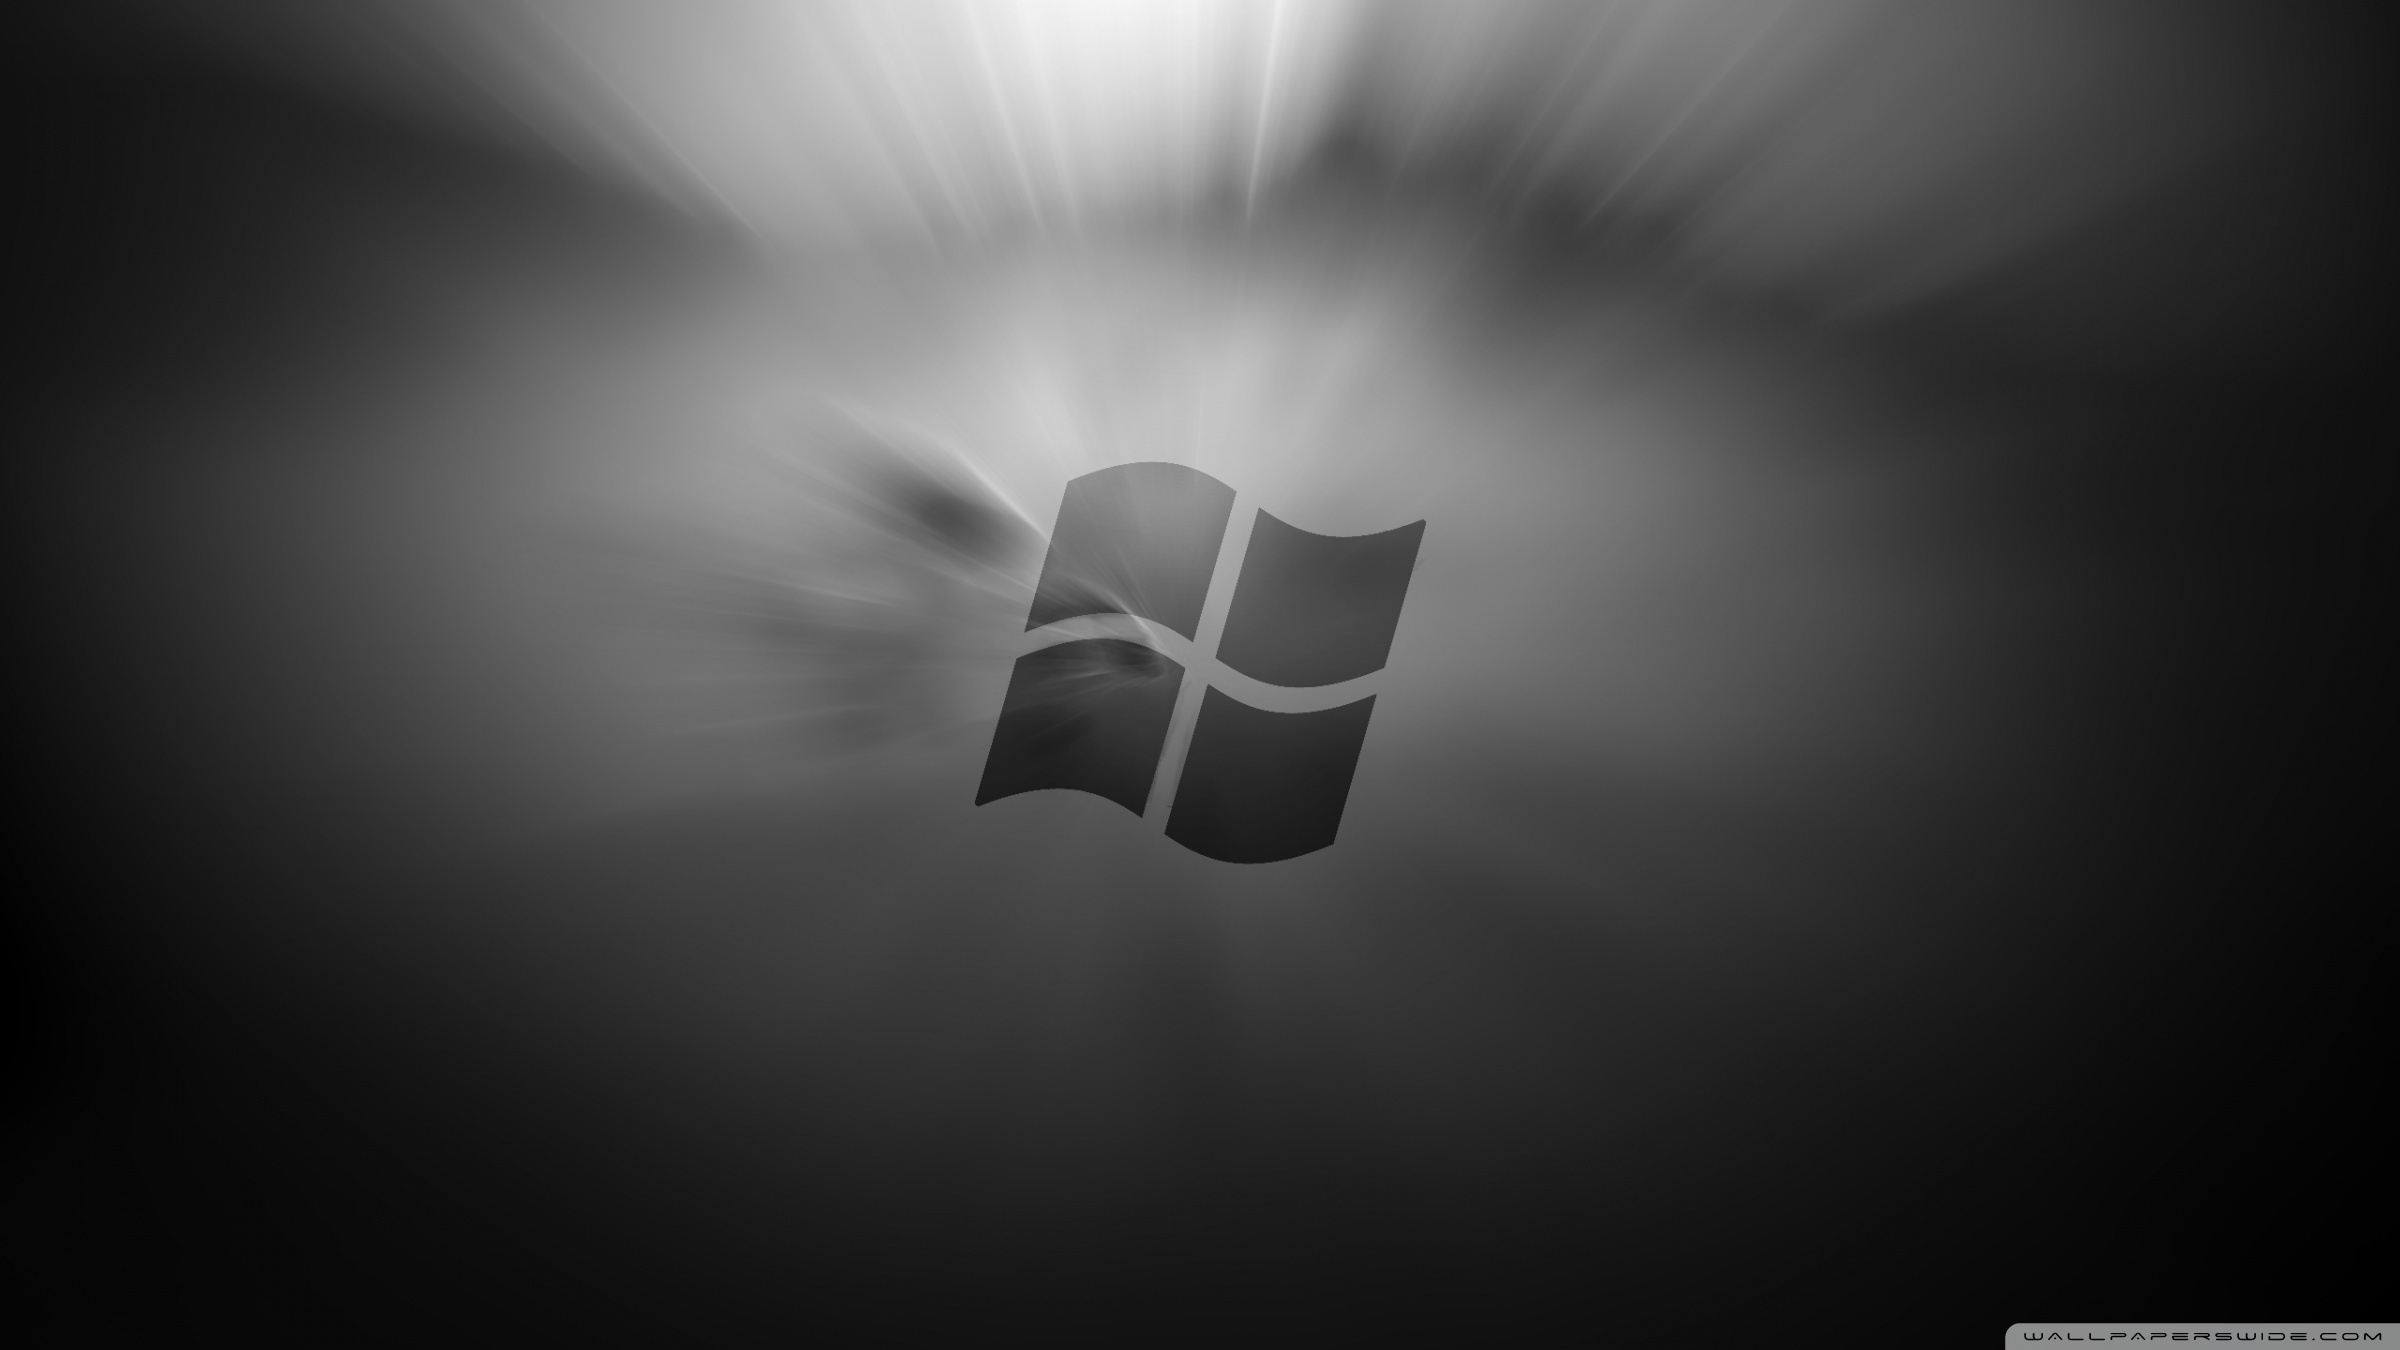 Tải xuống hình nền chủ đề Windows 8 đen: Hãy trang trí laptop hay PC của bạn với hình nền chủ đề Windows 8 đen siêu đẳng. Đây là lựa chọn tuyệt vời cho những người yêu thích sự hoàn hảo, sáng tạo và tinh tế.